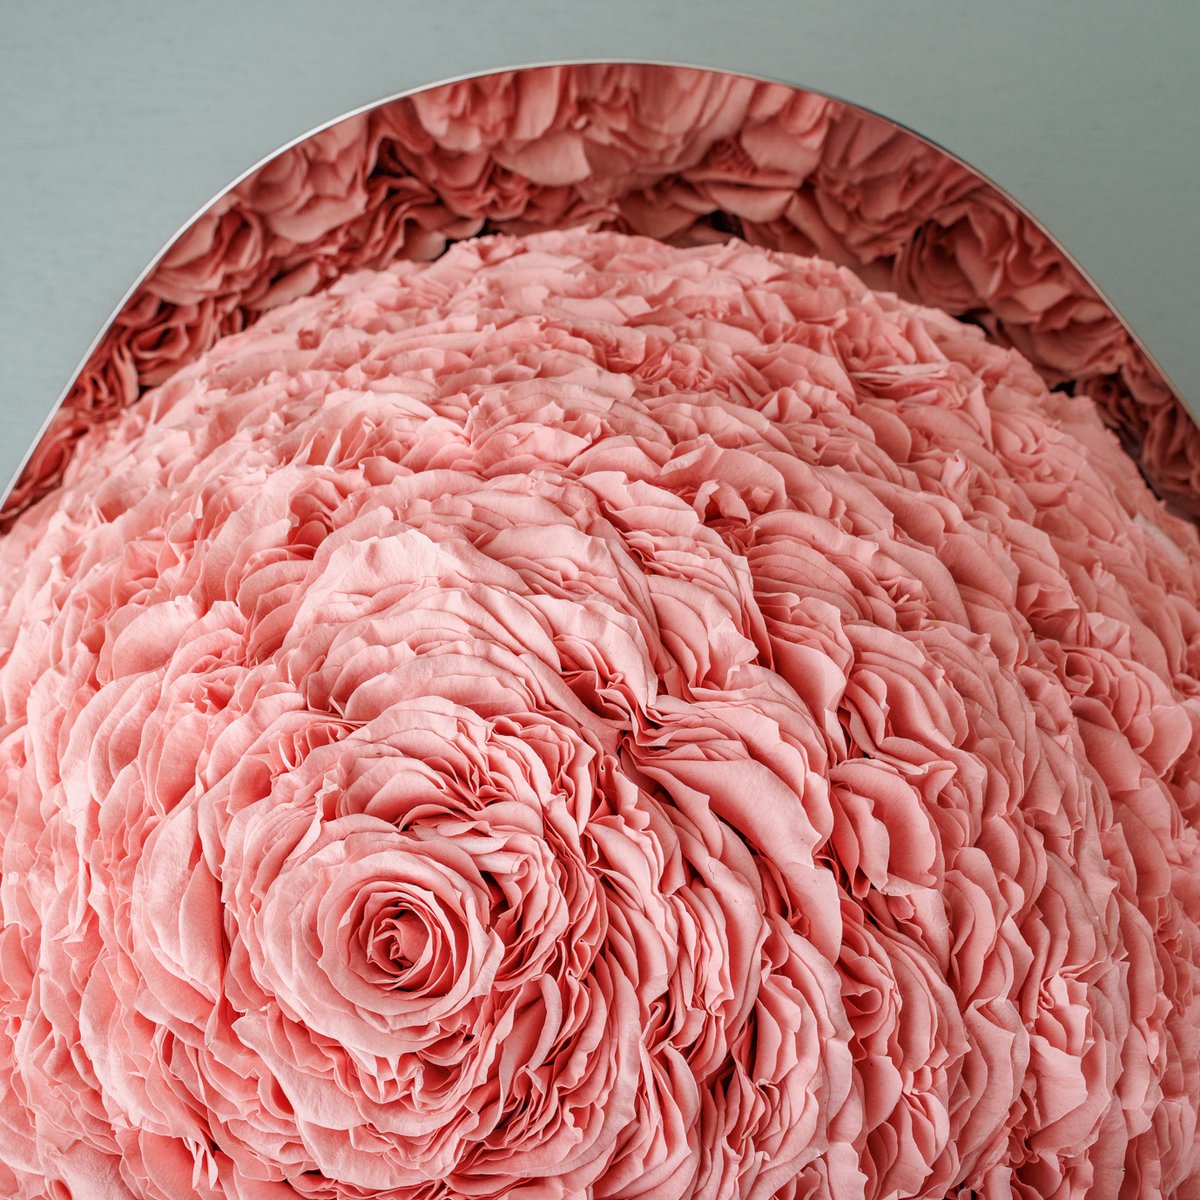 一目見たら忘れられないほど、ゴージャスなピンクの薔薇のアレンジメントです。どれほどの時間をかけて丁寧に作ったことでしょうか。 #nicolaibergmann #ニコライバーグマン @thenicolaibergmann